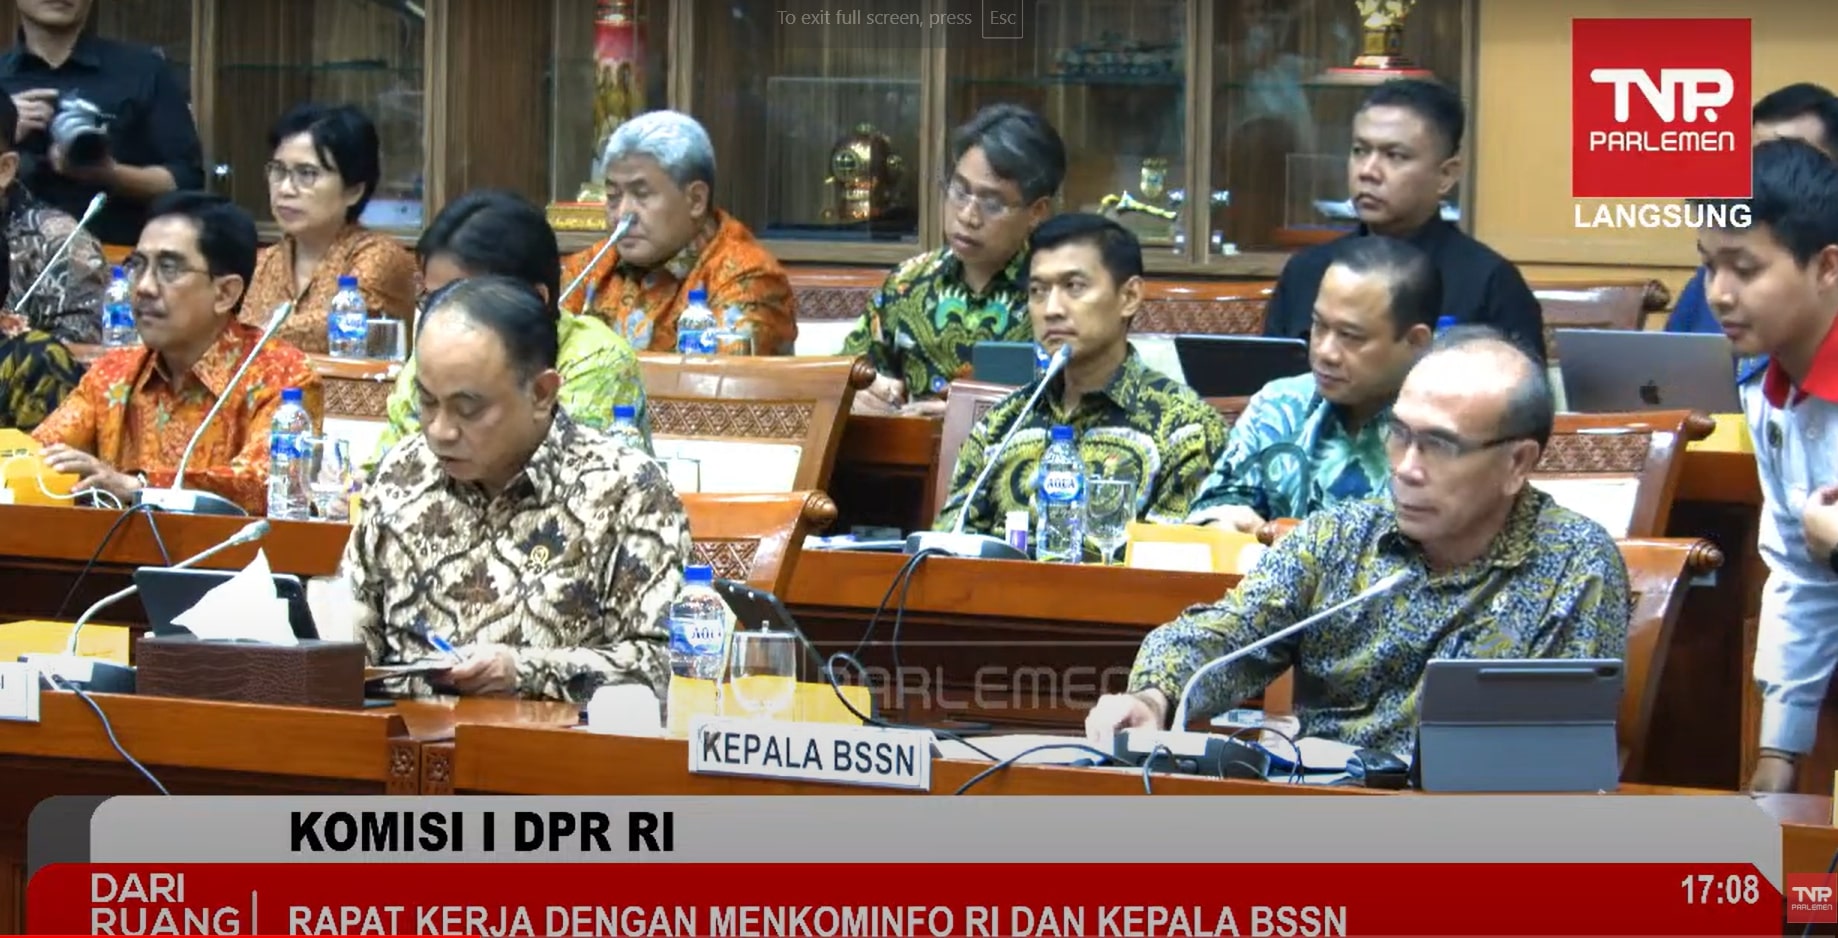 DPR RI Sebut Insiden Peretasan PDNS 2 Sebagai 'Kebodohan' dan 'Bencana'